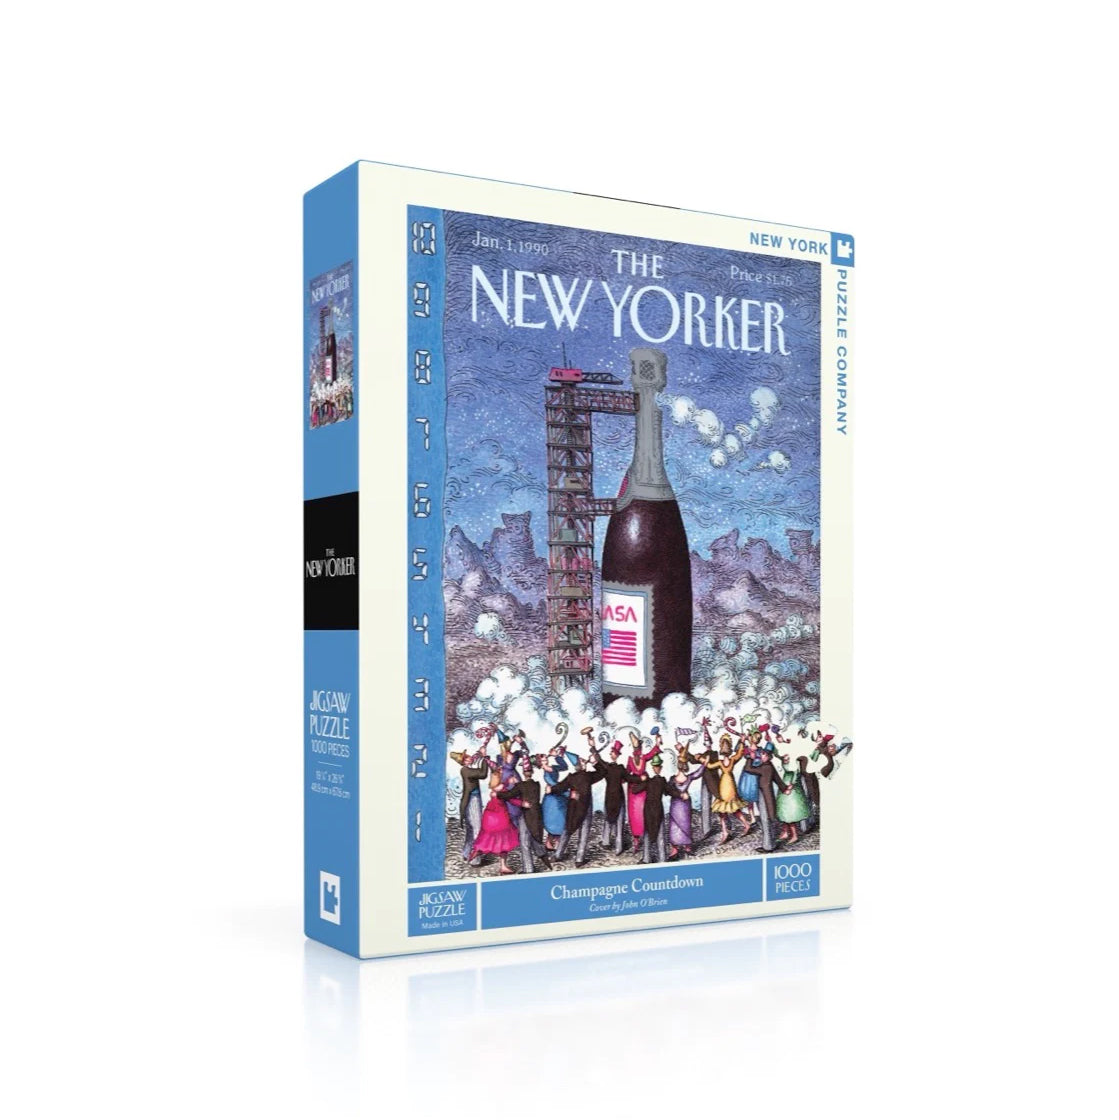 Puzzel the New Yorker│Champagne Countdown 1000 stukjes│New York Puzzle Company│art. NPZNY2249│verpakking met schaduw